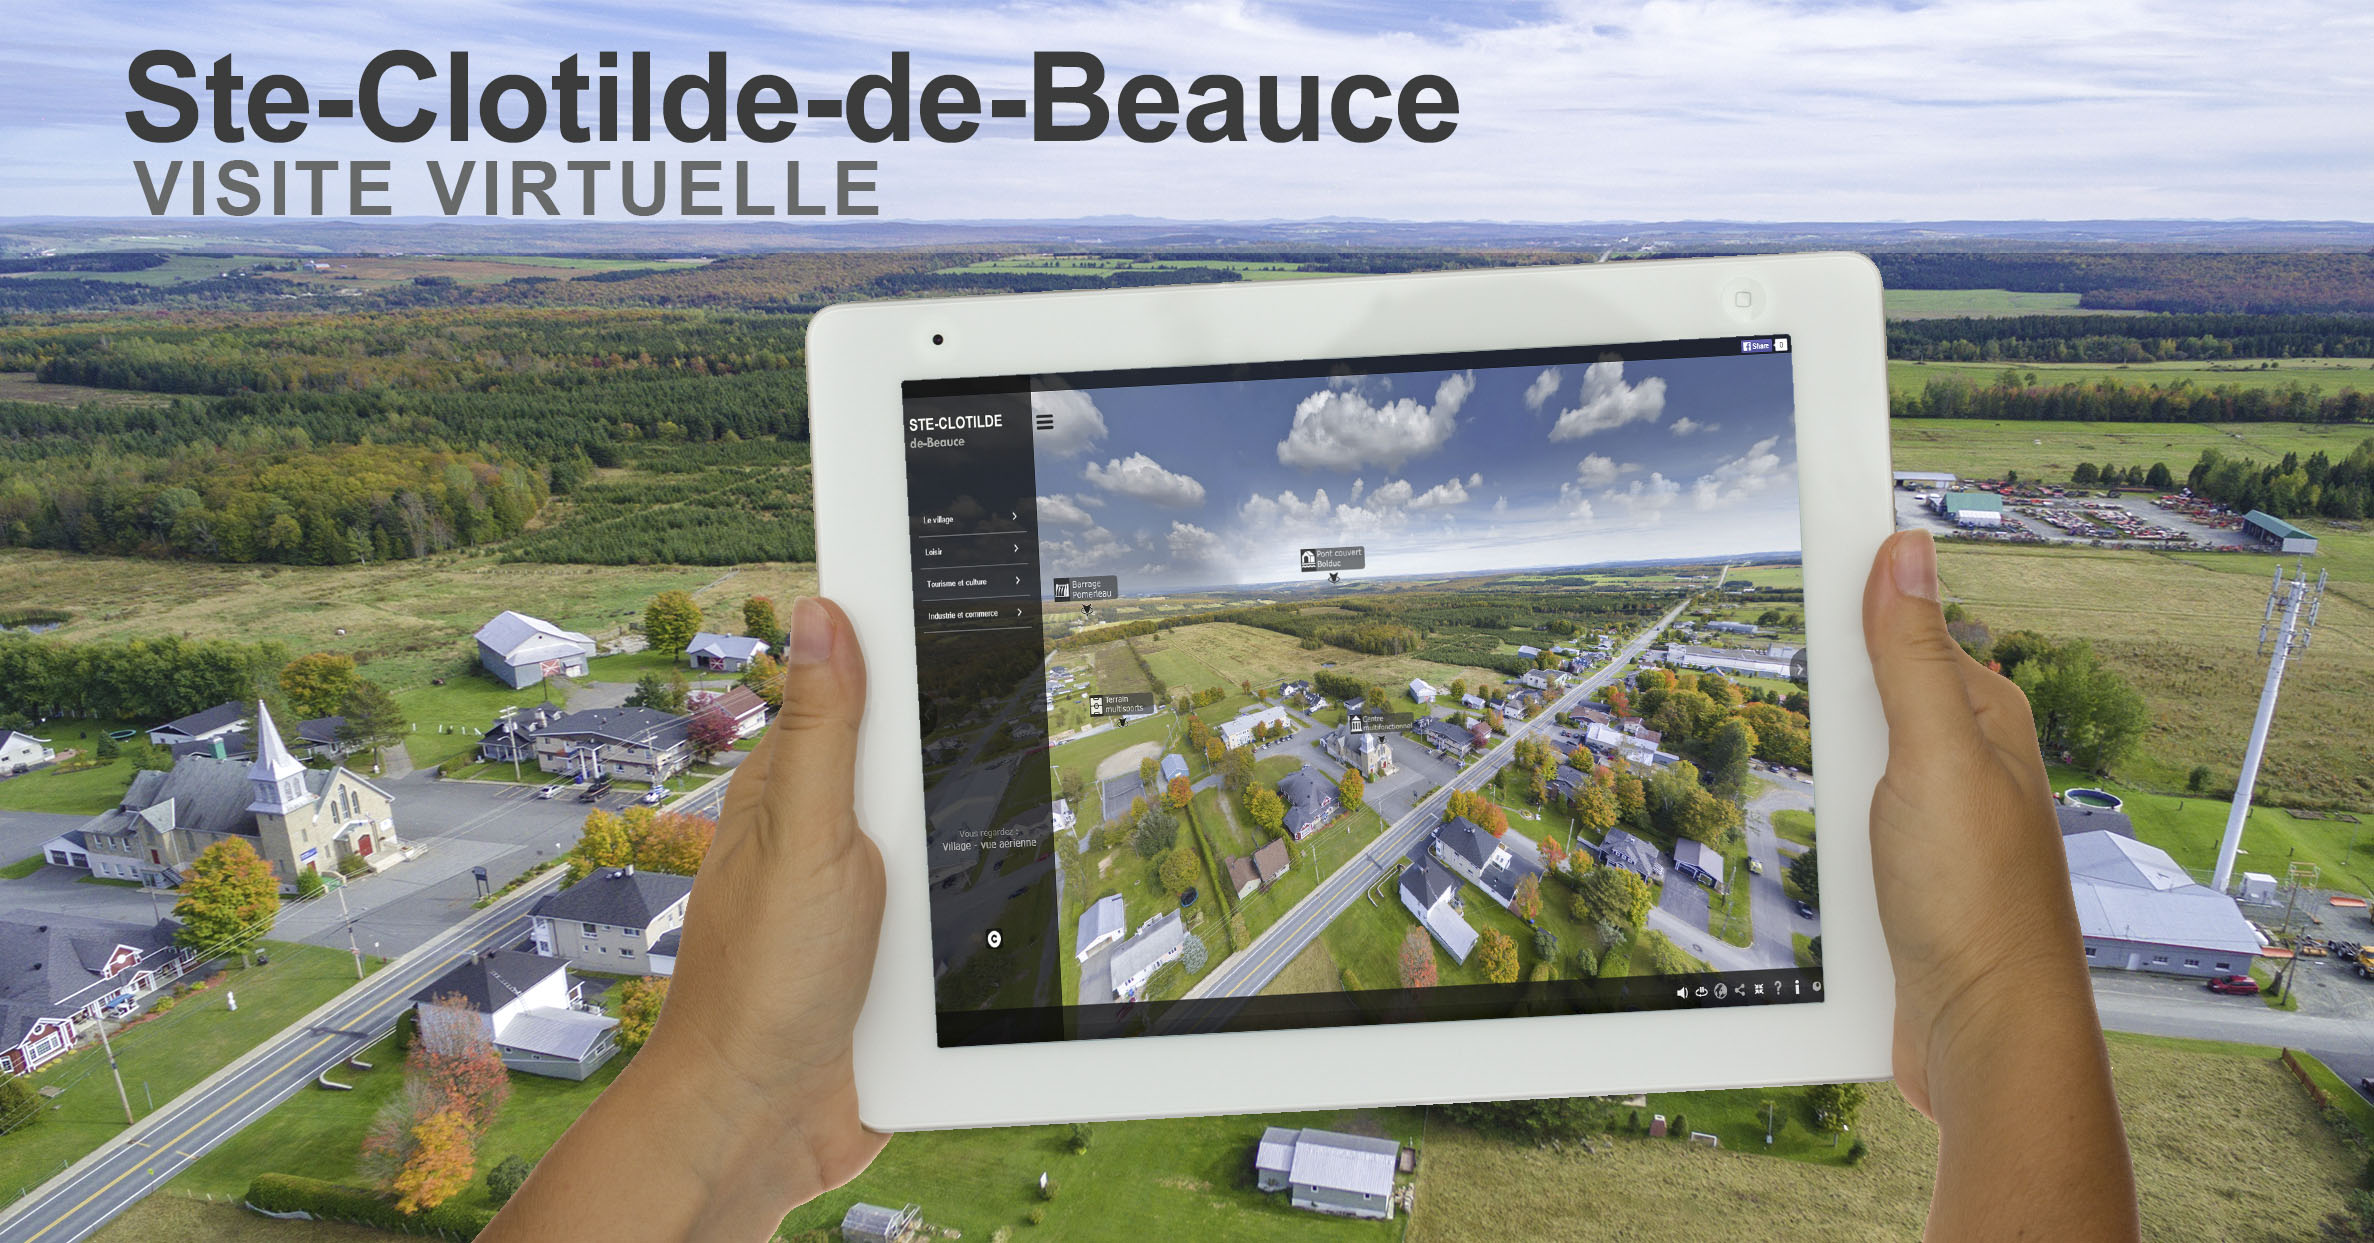 Visite virtuelle 360 degrés Ste-Clotilde-de-Beauce